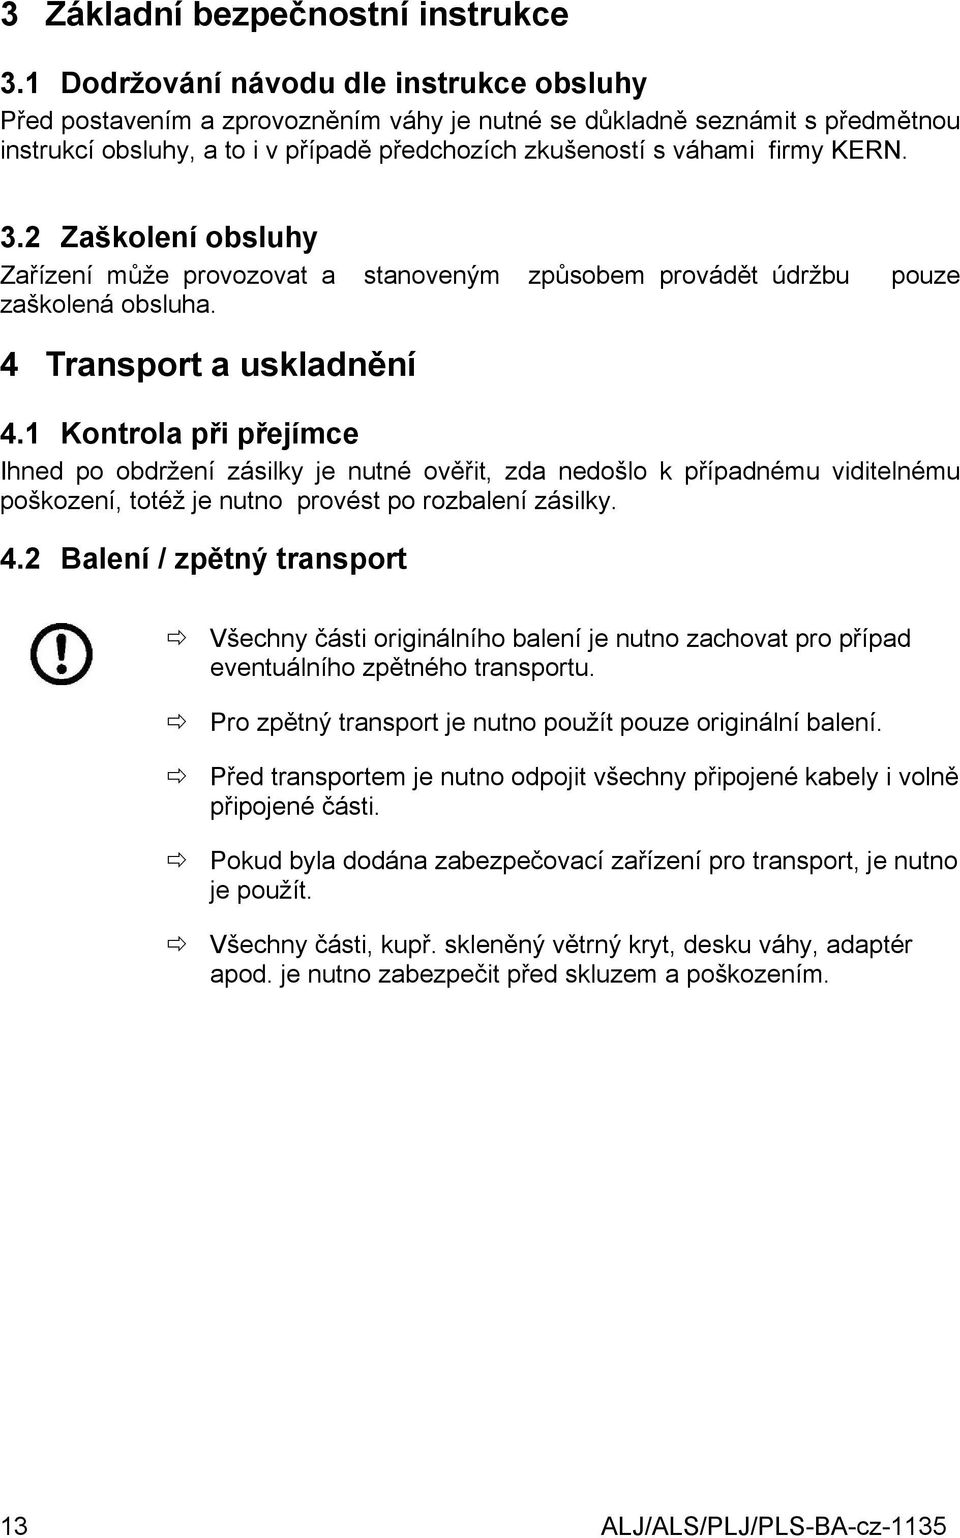 3.2 Zaškolení obsluhy Zařízení může provozovat a stanoveným způsobem provádět údržbu zaškolená obsluha. pouze 4 Transport a uskladnění 4.